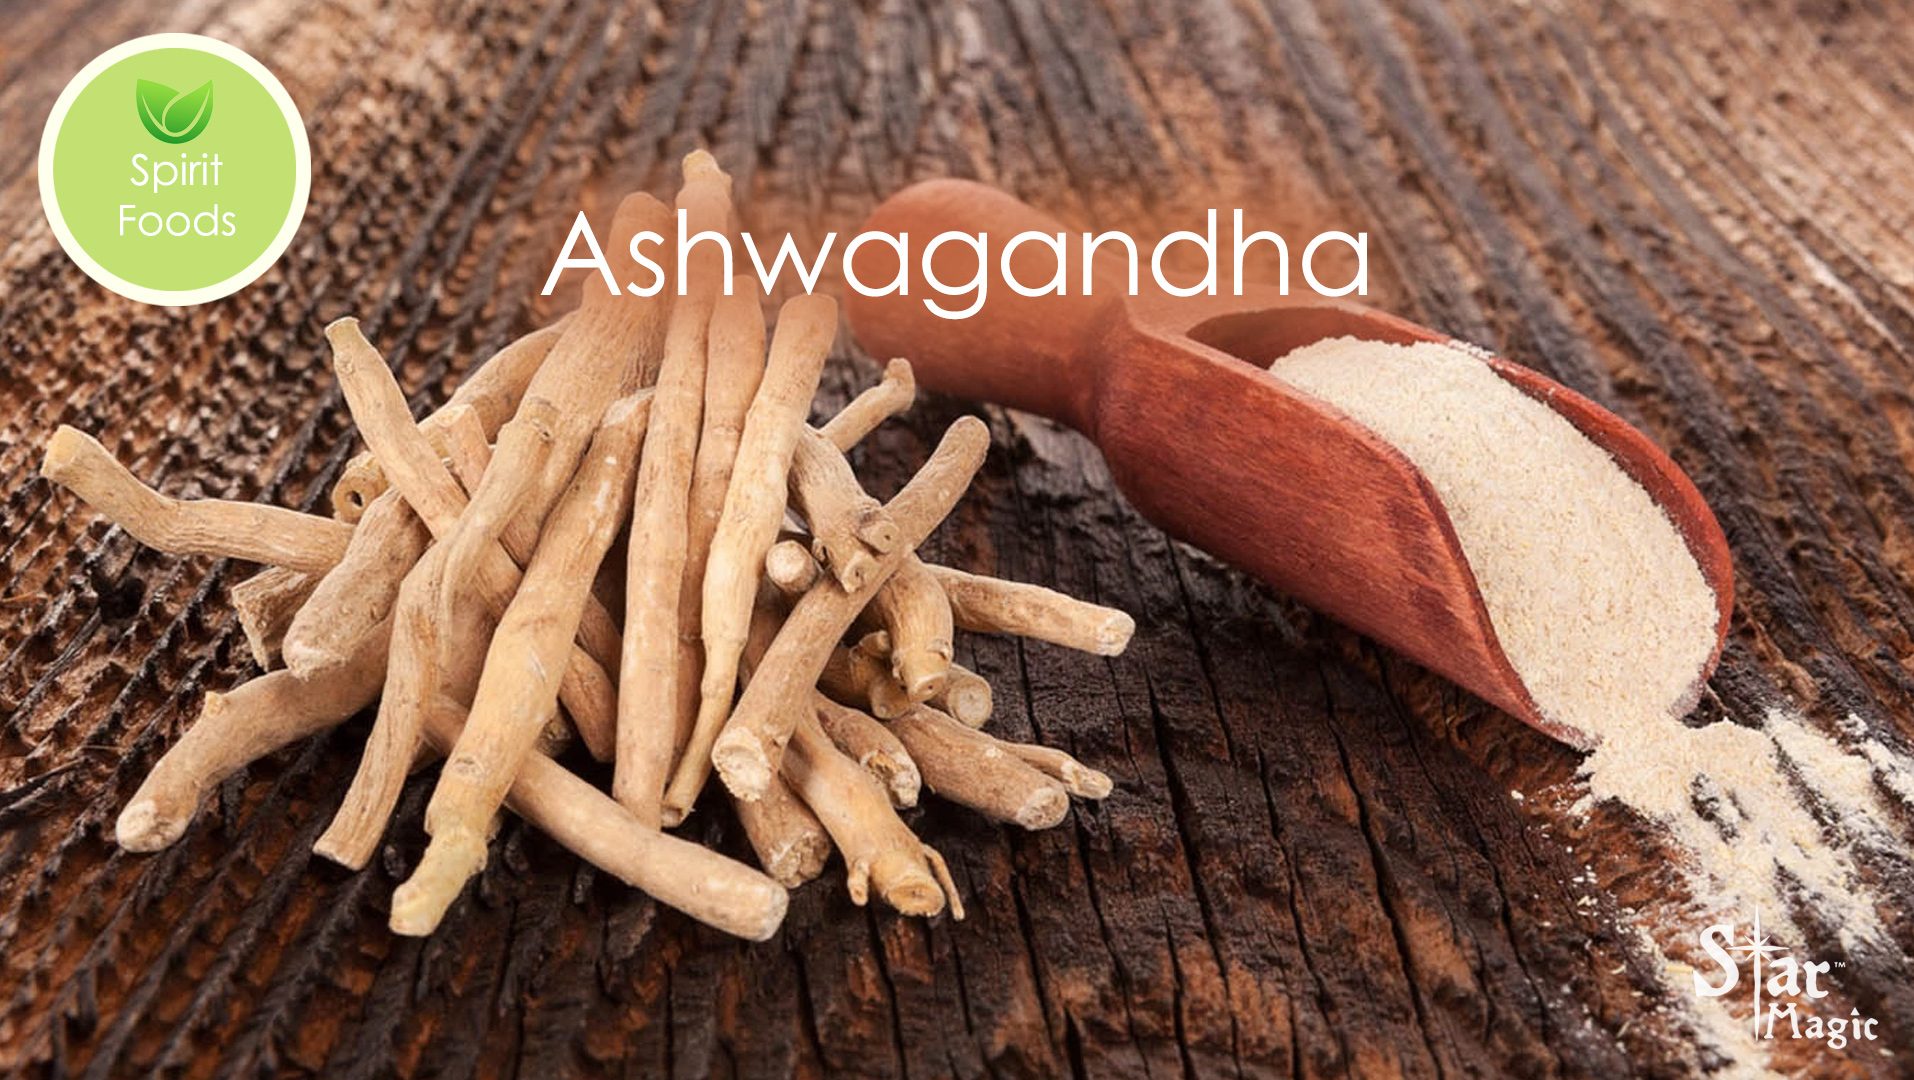 Spirit Food – Ashwagandha